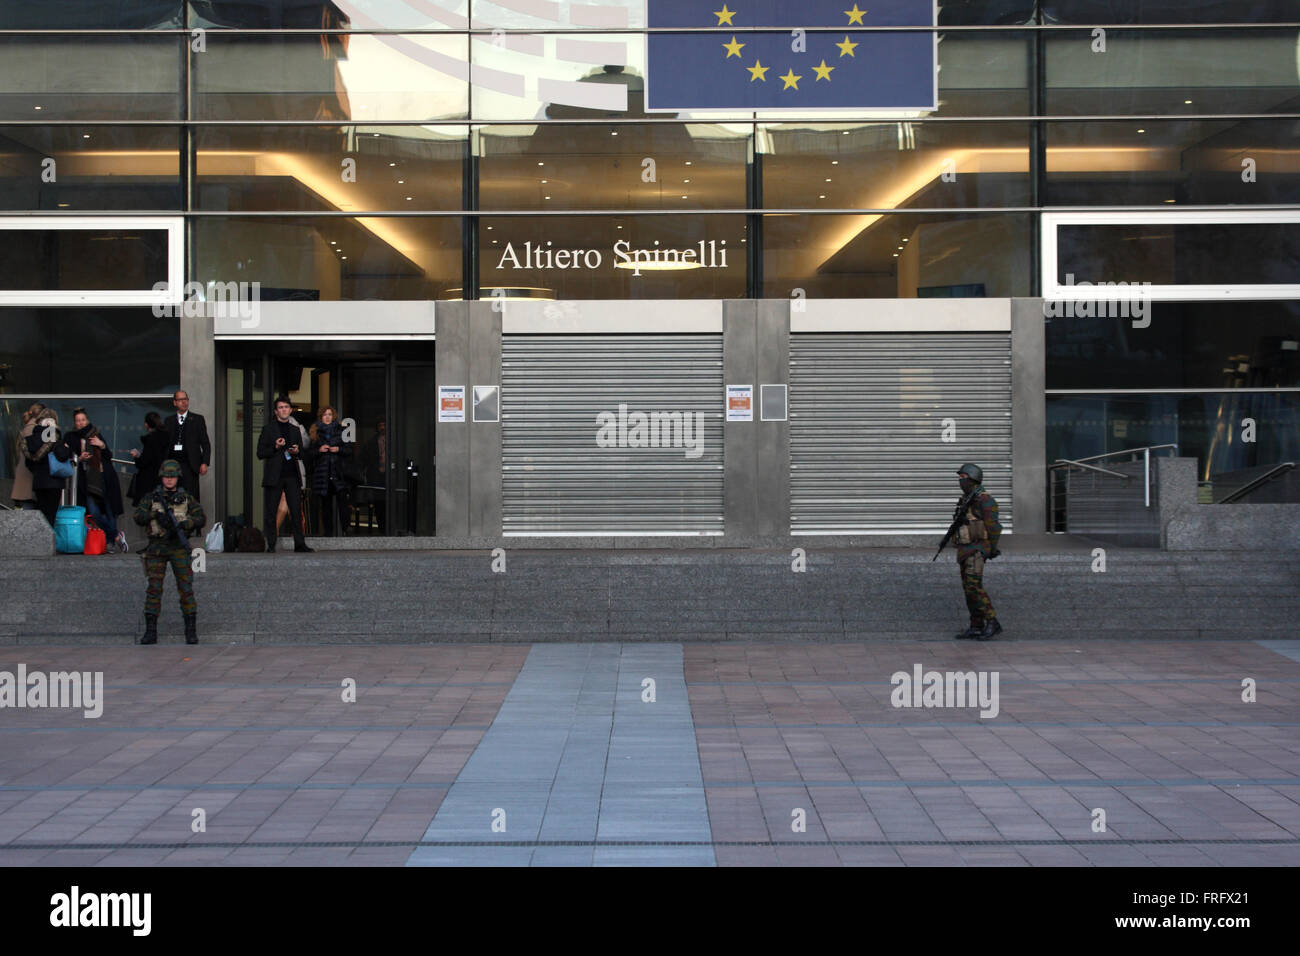 Bruxelles, Belgio. 22 Mar, 2016. Soldati di guardia al di fuori del Parlamento europeo dopo gli attentati che hanno scosso il Belgio Credito: Rey T. Byhre/Alamy Live News Foto Stock